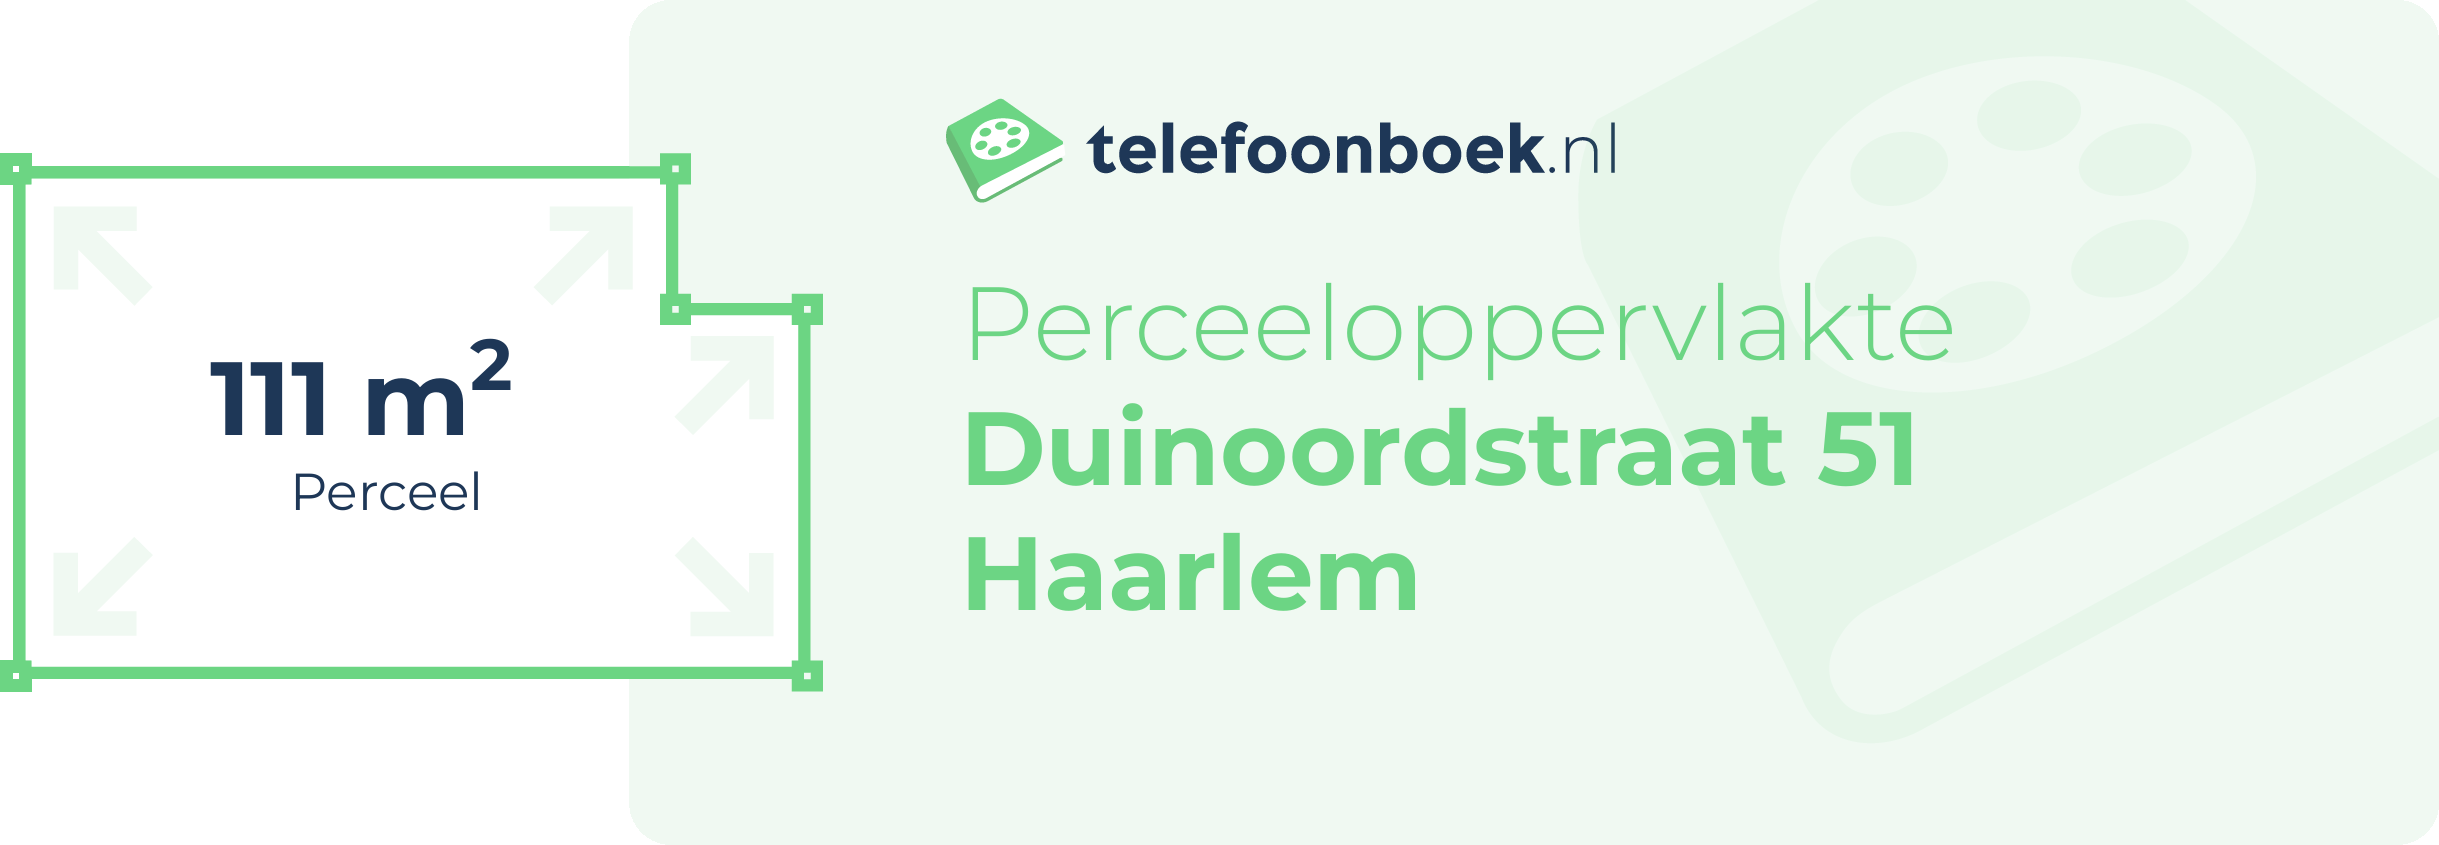 Perceeloppervlakte Duinoordstraat 51 Haarlem